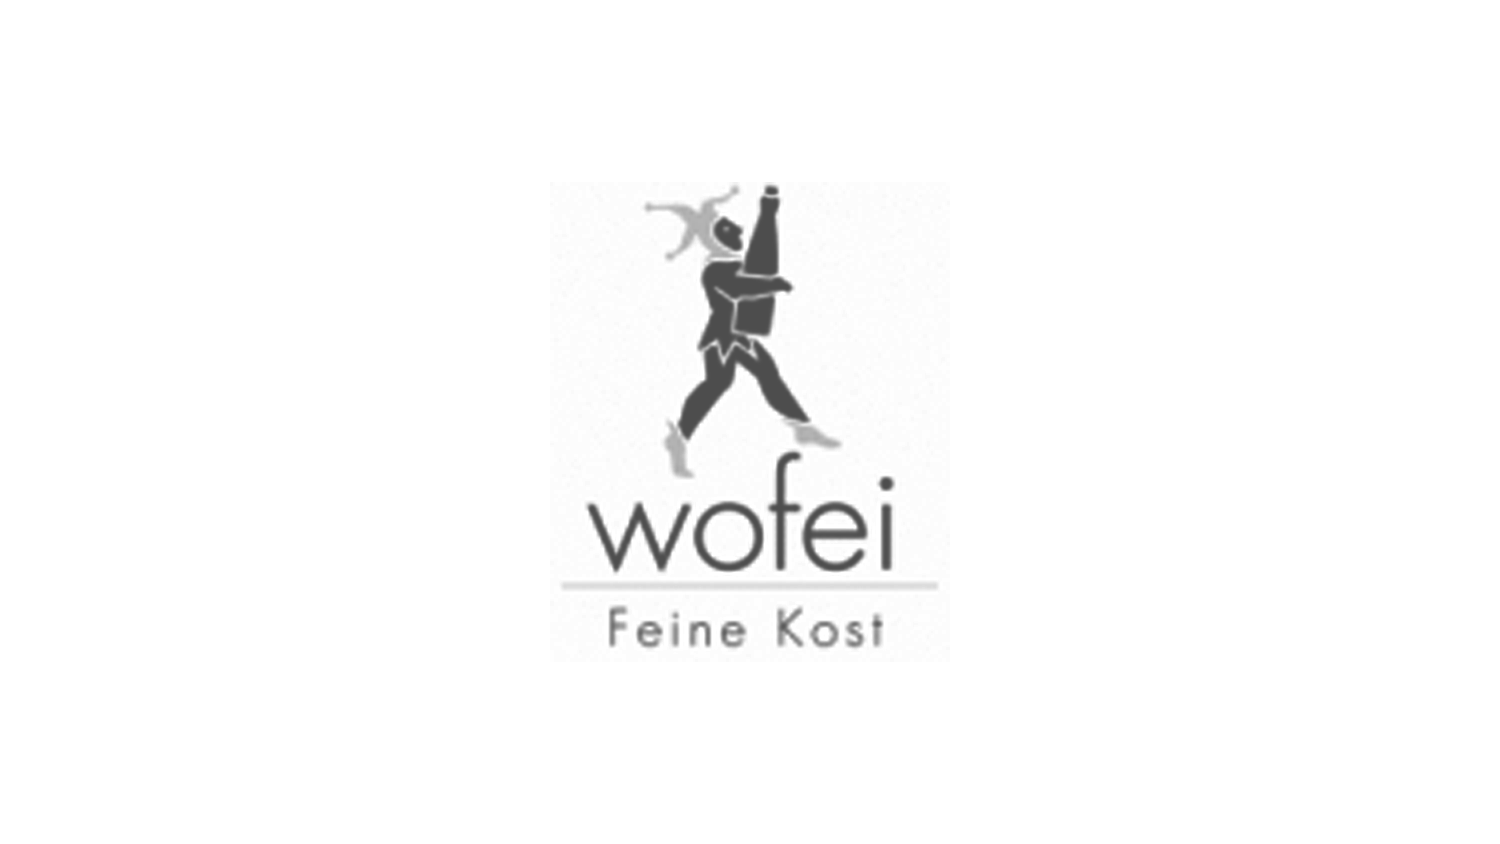 Wofei Feine Kost Logo in grauer Schrift mit einer stilisierten Figur, die Lebensmittel trägt